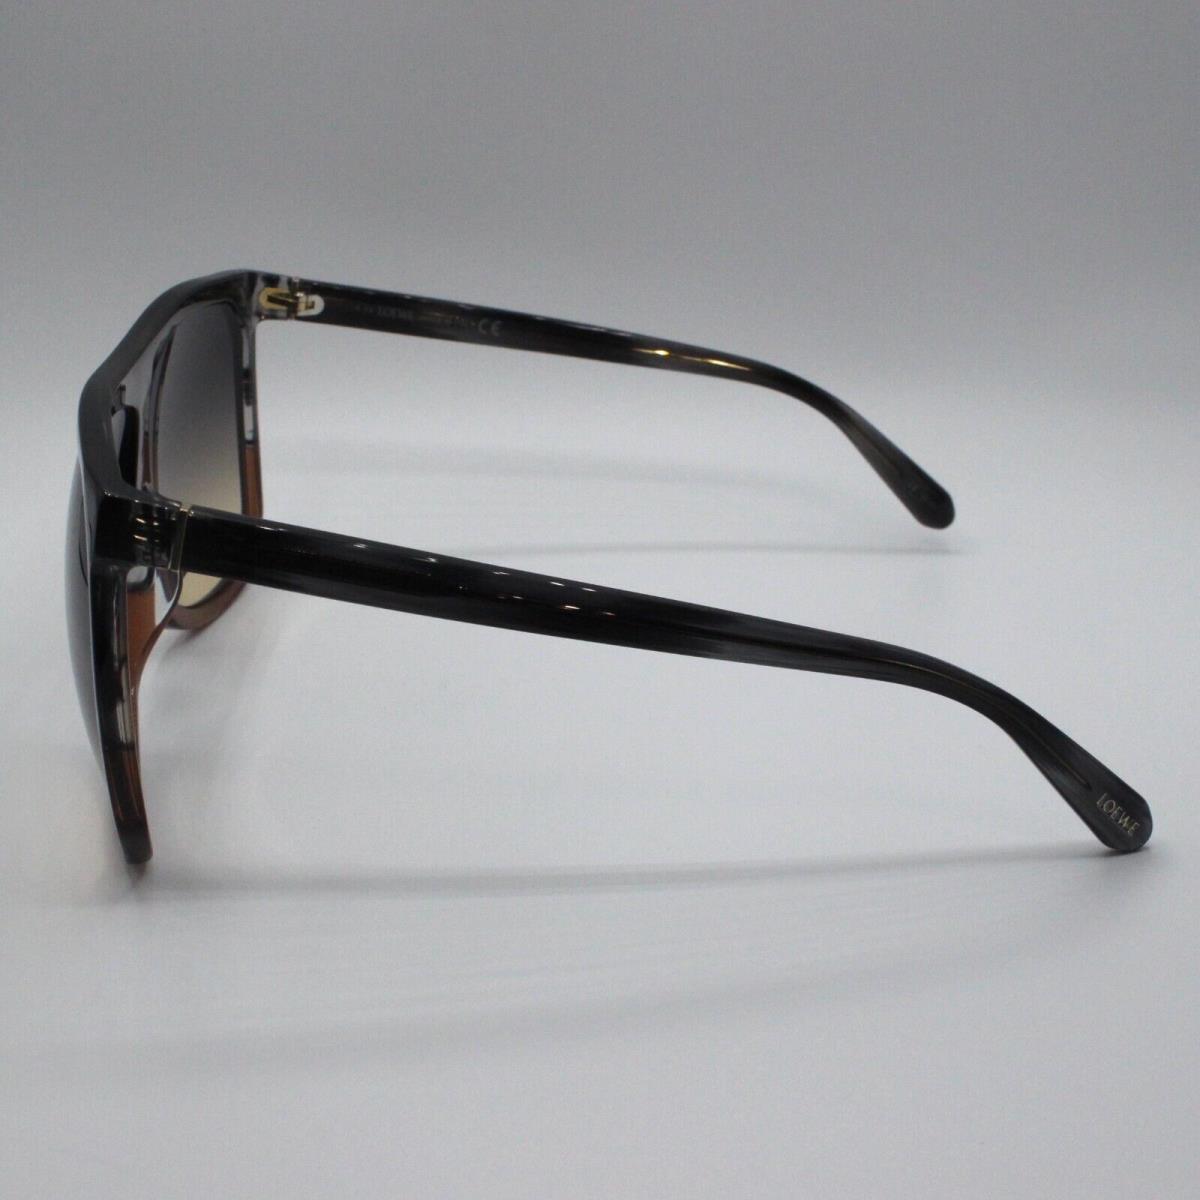 Loewe sunglasses  - Frame: Brown